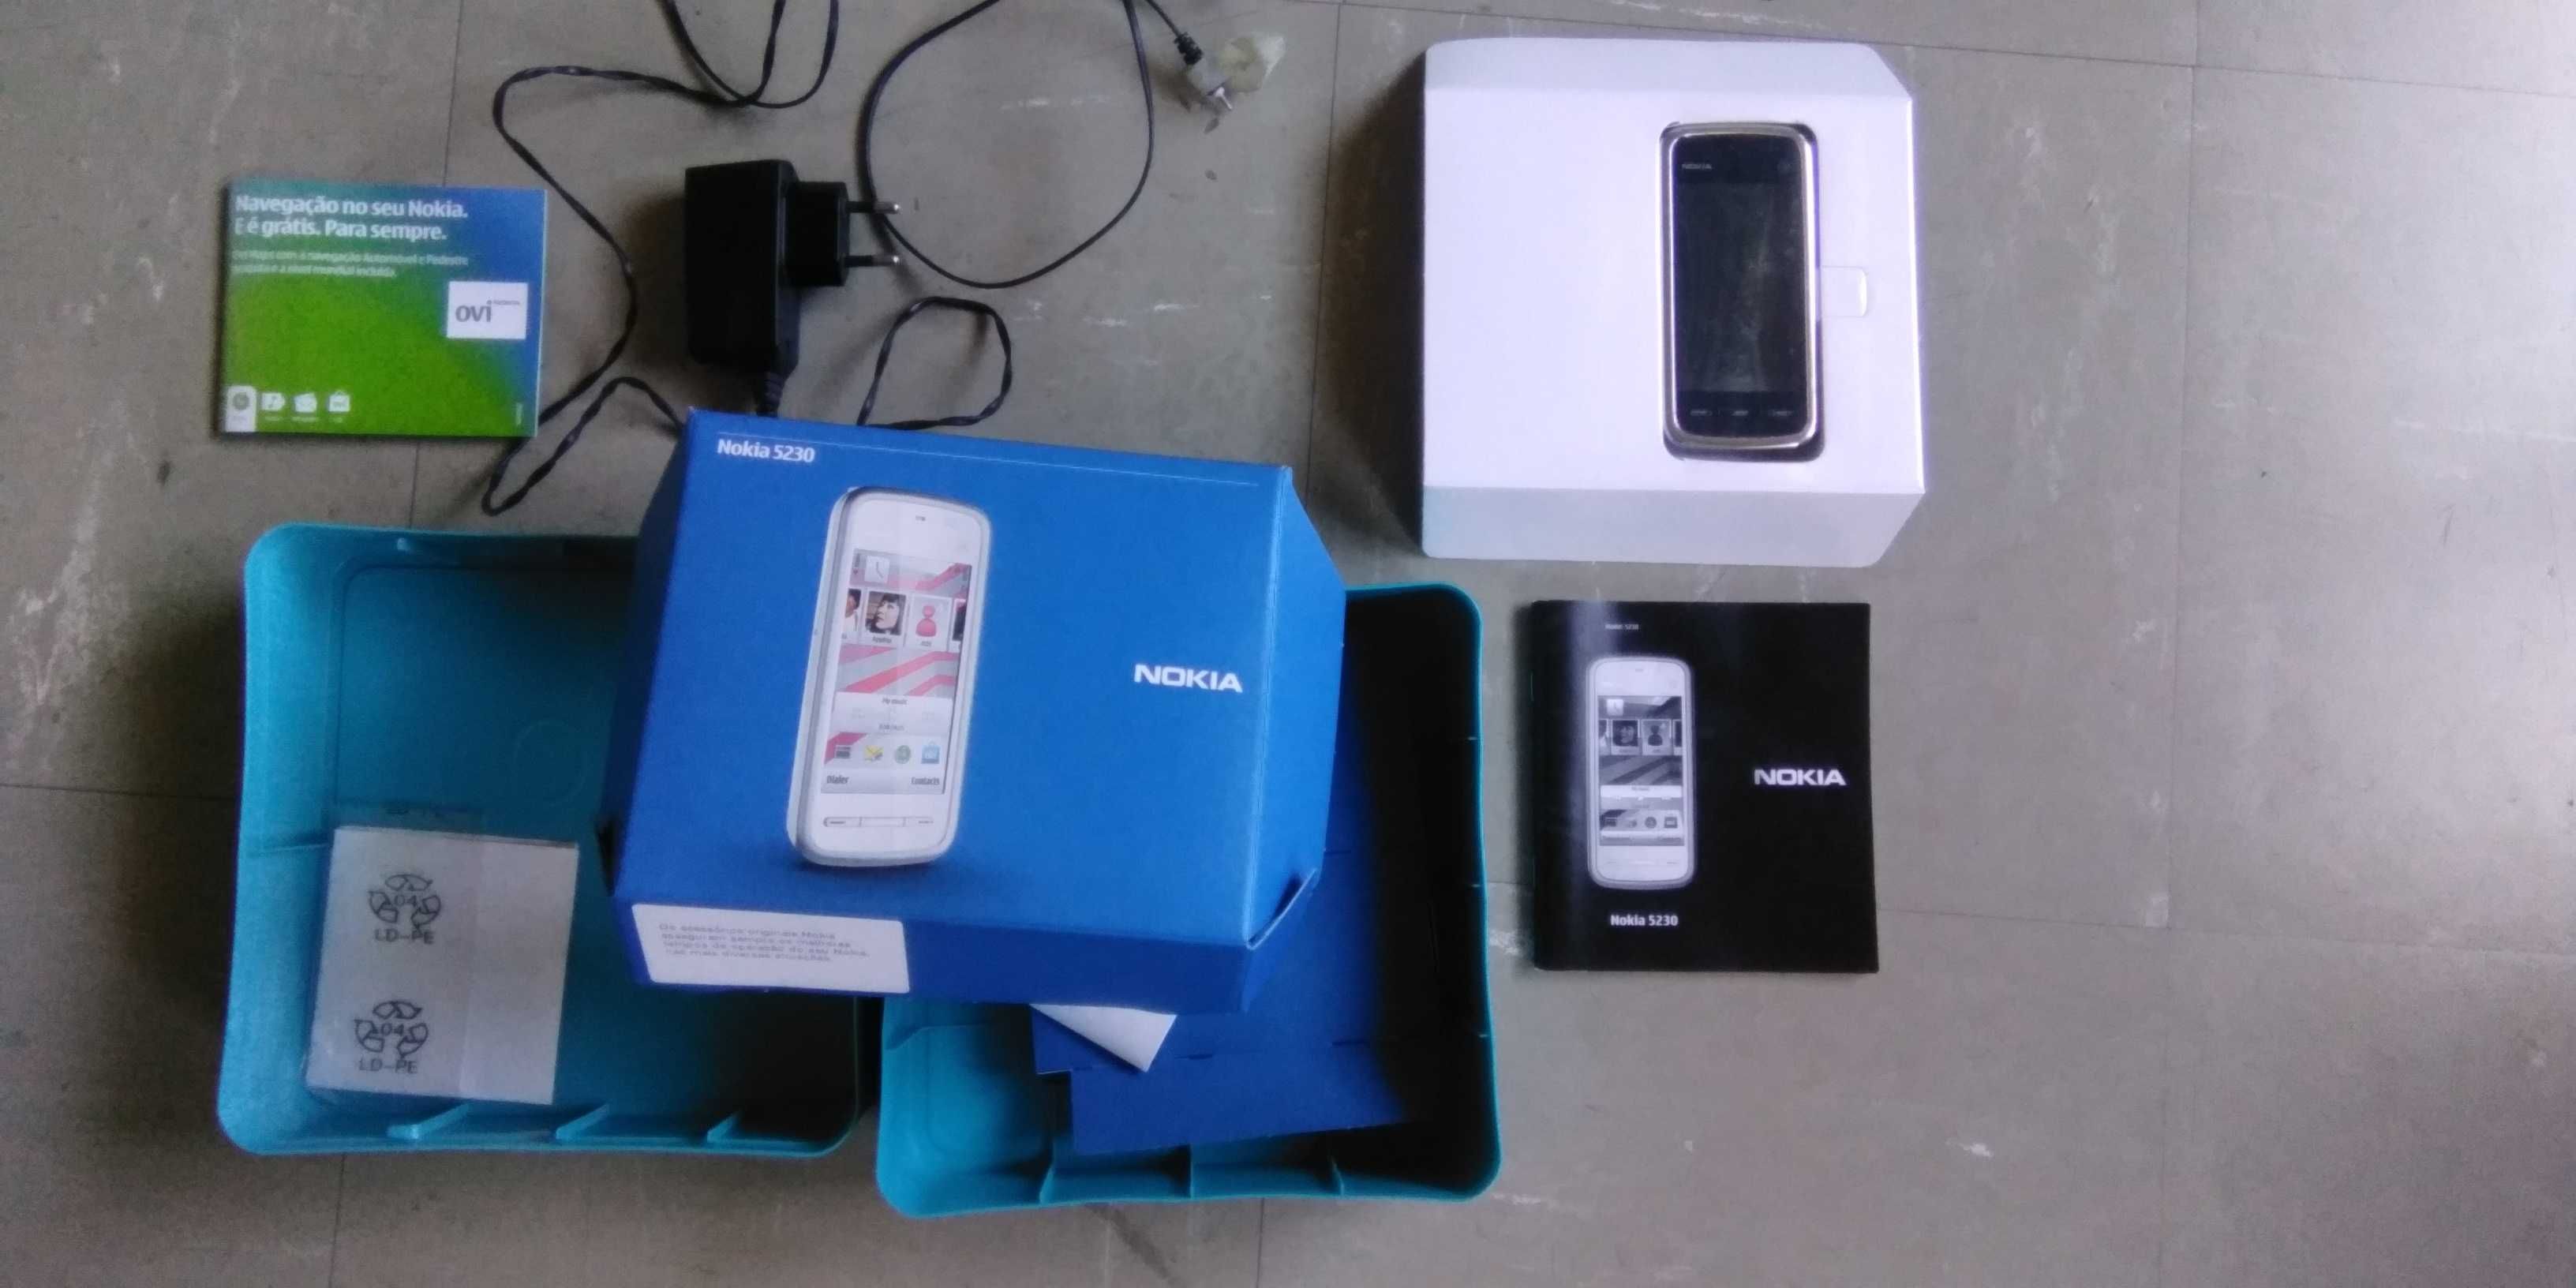 Quatro telemóveis (não smart) Alcatel, LG, Siemens e Nokia 5230